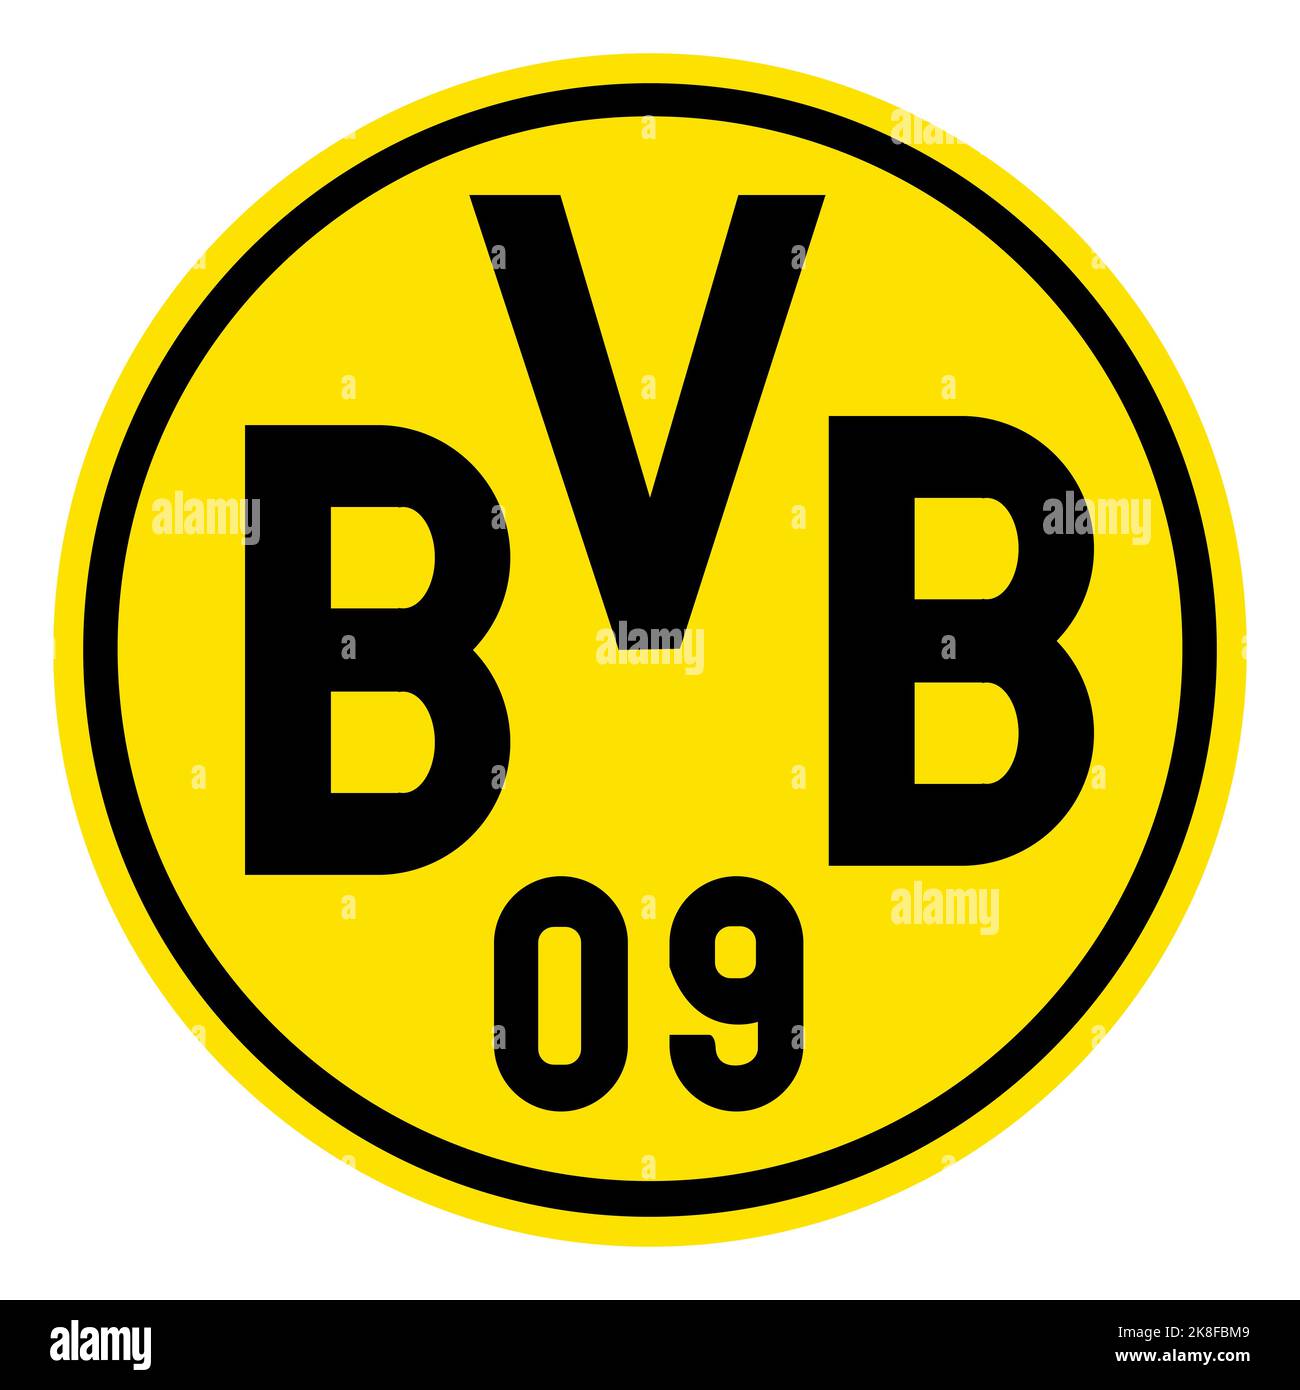 Francoforte sul meno, Germania - 10.23.2022 Logo della società calcistica tedesca Borussia Dortmund. Immagine vettoriale Illustrazione Vettoriale